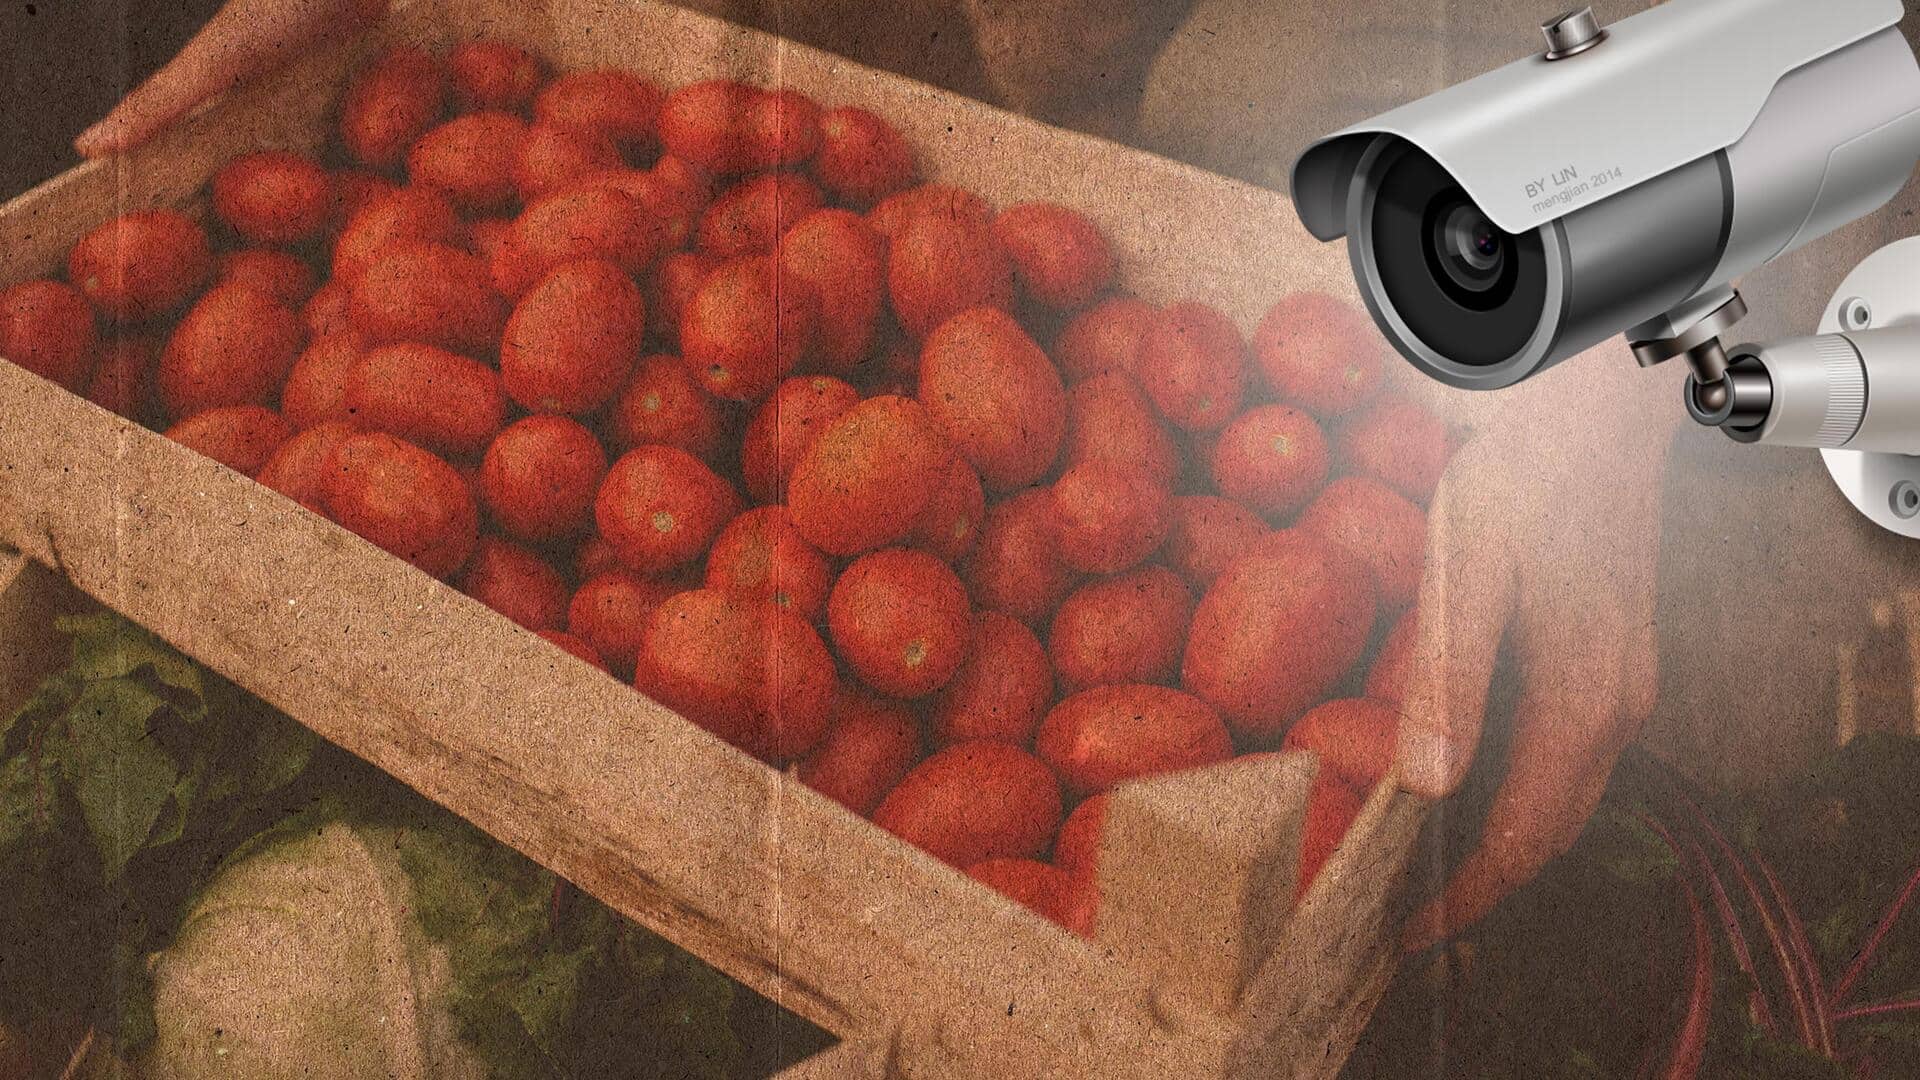 महाराष्ट्र: टमाटरों की निगरानी के लिए किसान ने खेत में लगाया CCTV कैमरा, जानिए पूरा मामला